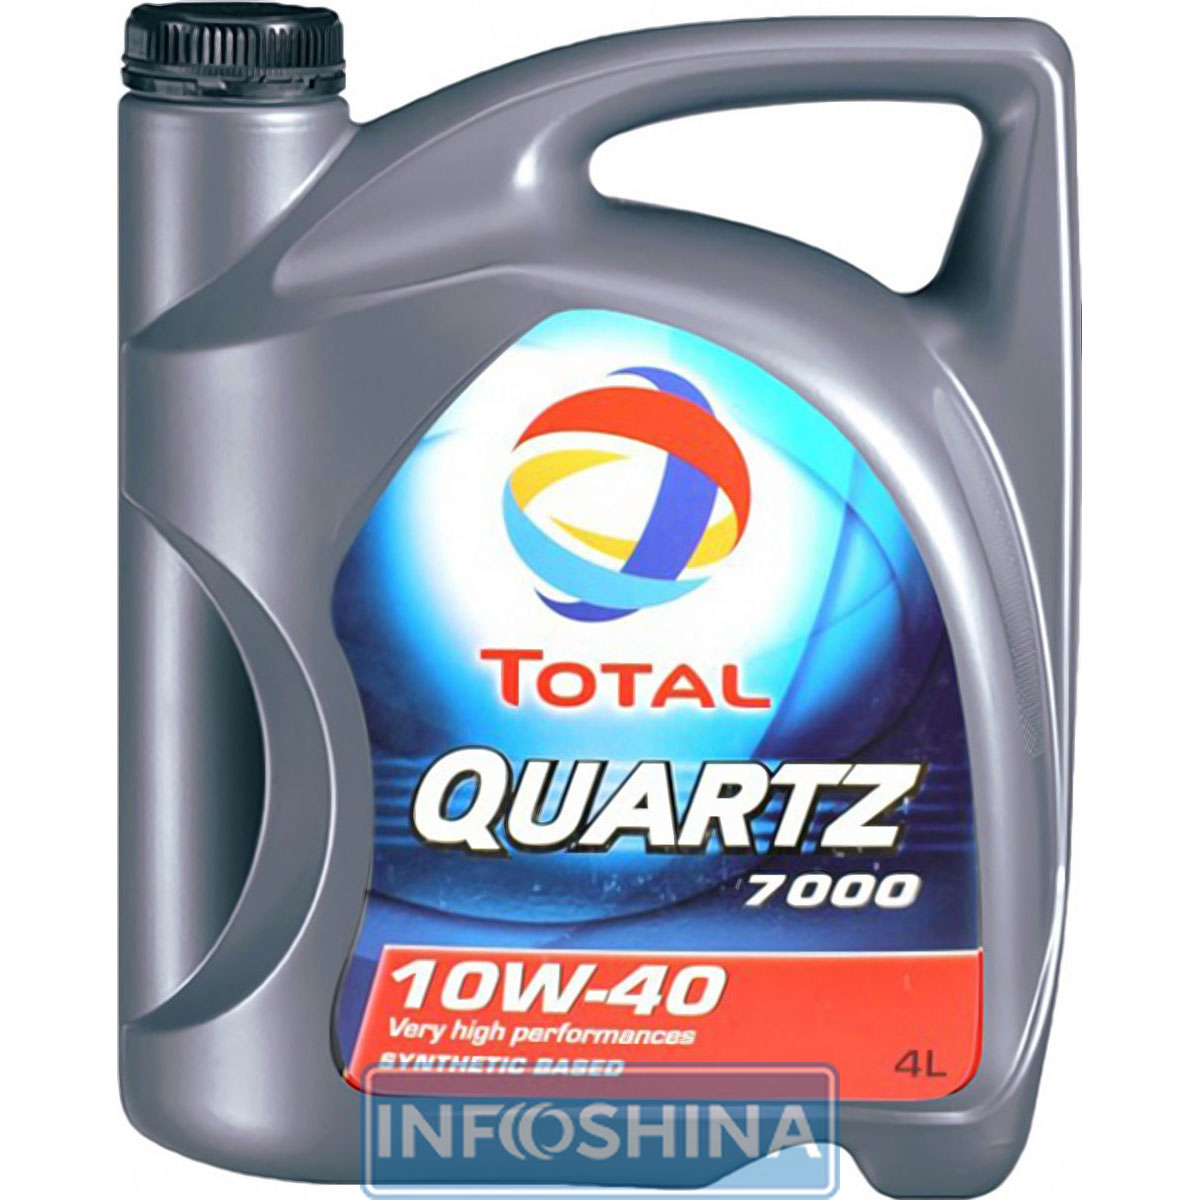 Купить масло Total Quartz 7000 10W-40 (4л)